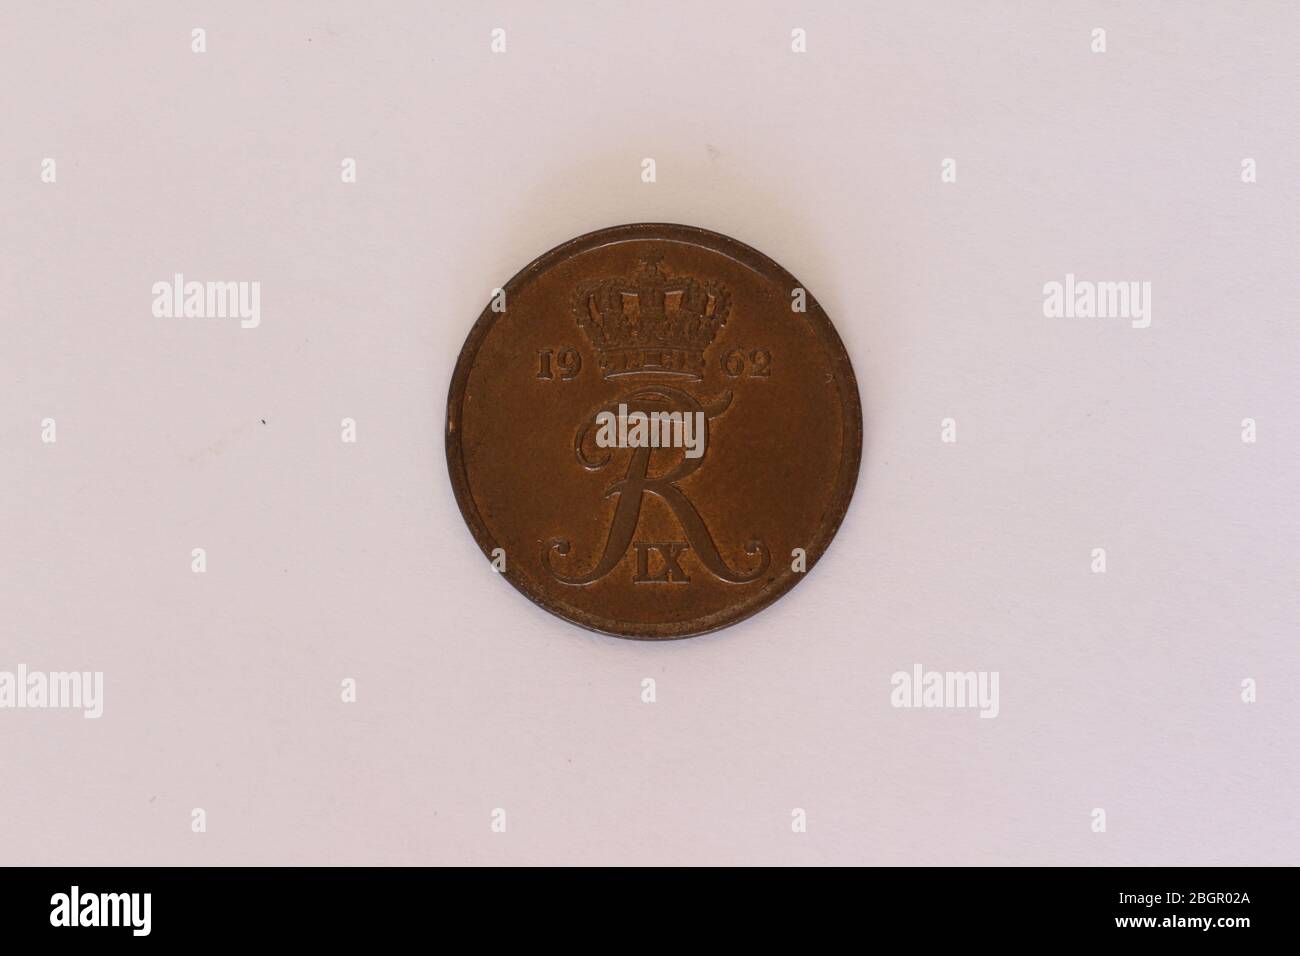 Großaufnahme einer Dänischen 5 Öre Münze Foto Stock